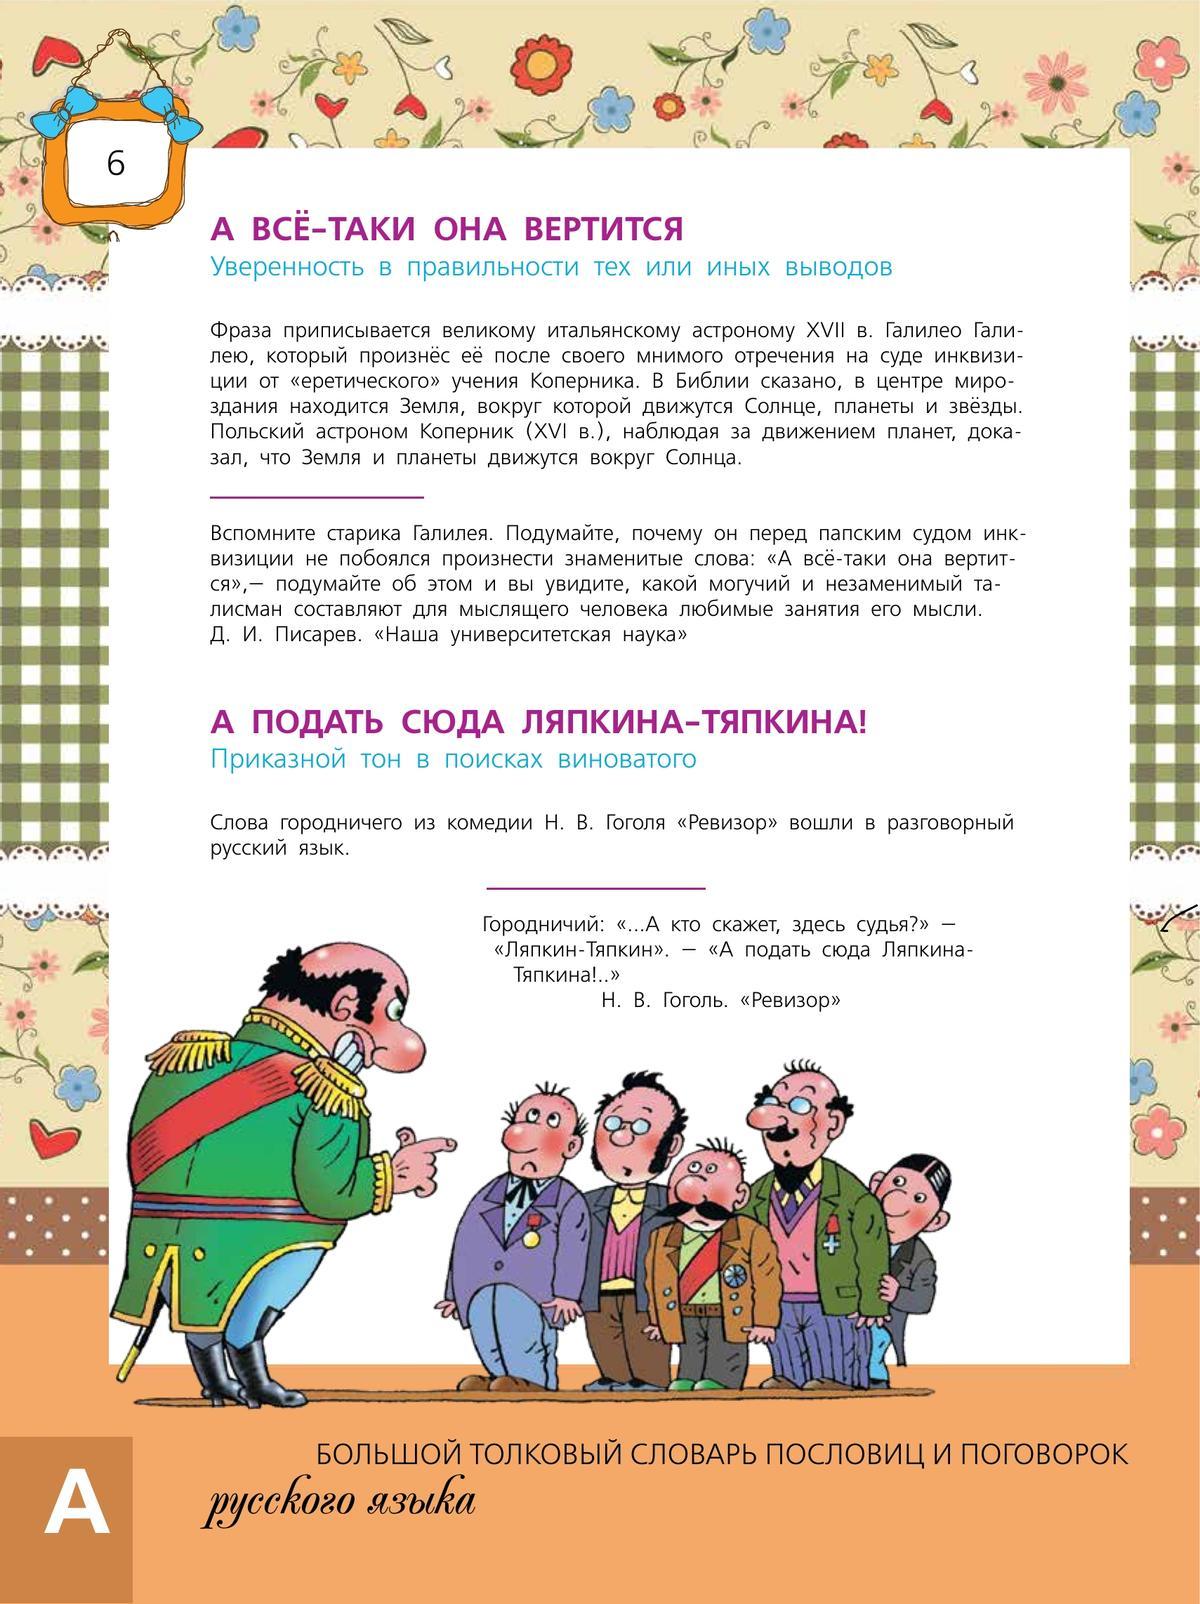 Большой толковый словарь пословиц и поговорок русского языка для детей 6